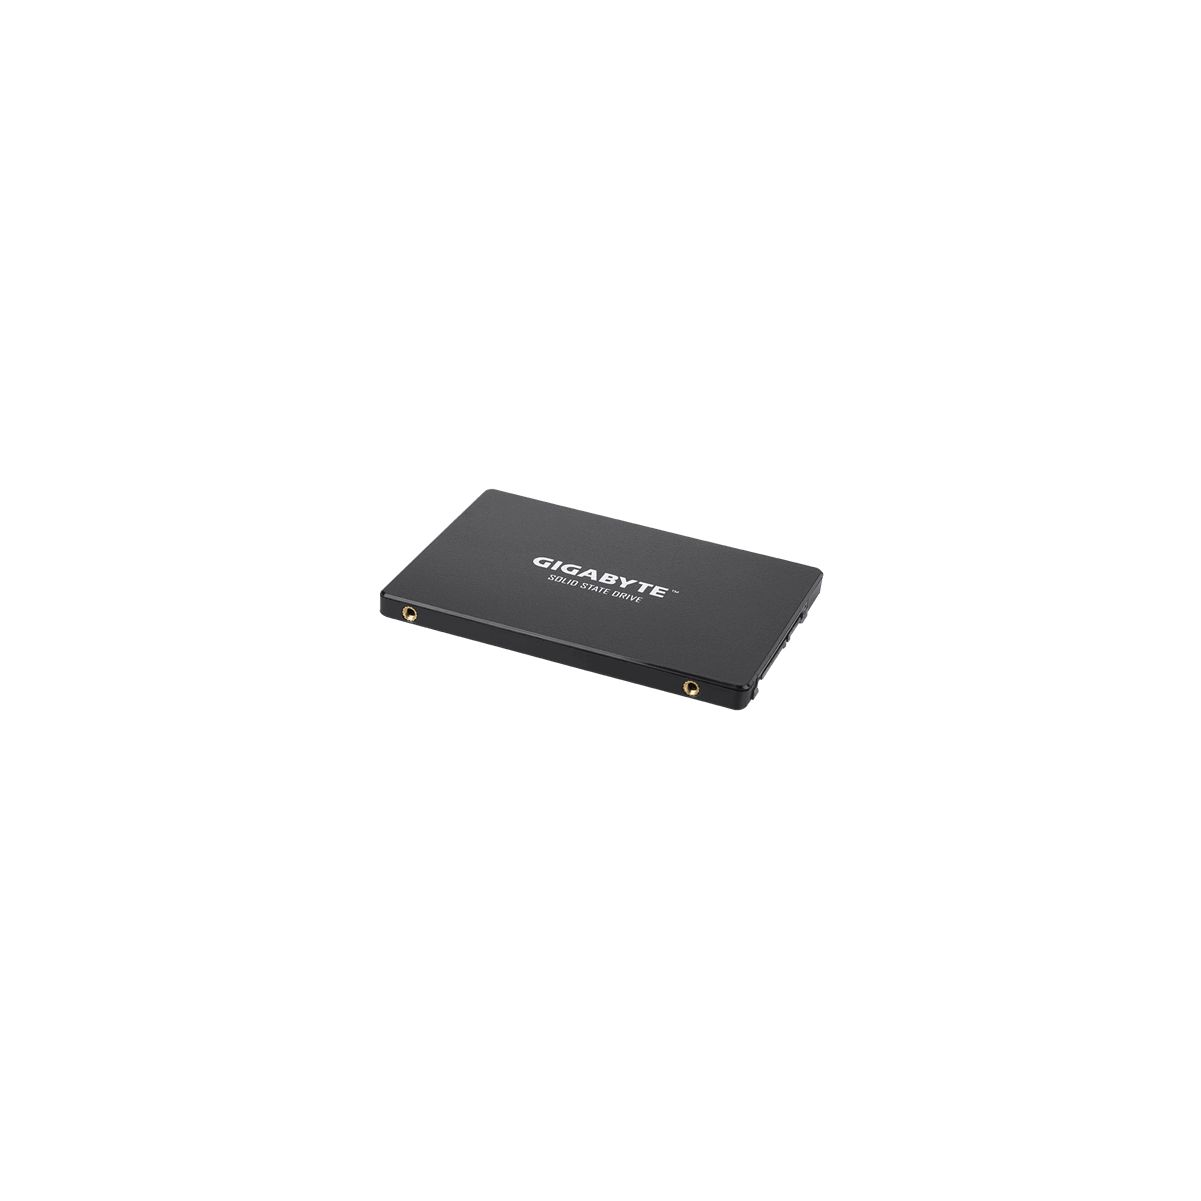 GIGABYTE GPSS1S120-00-G, 120 GB, SSD, 2,5 intern Zoll